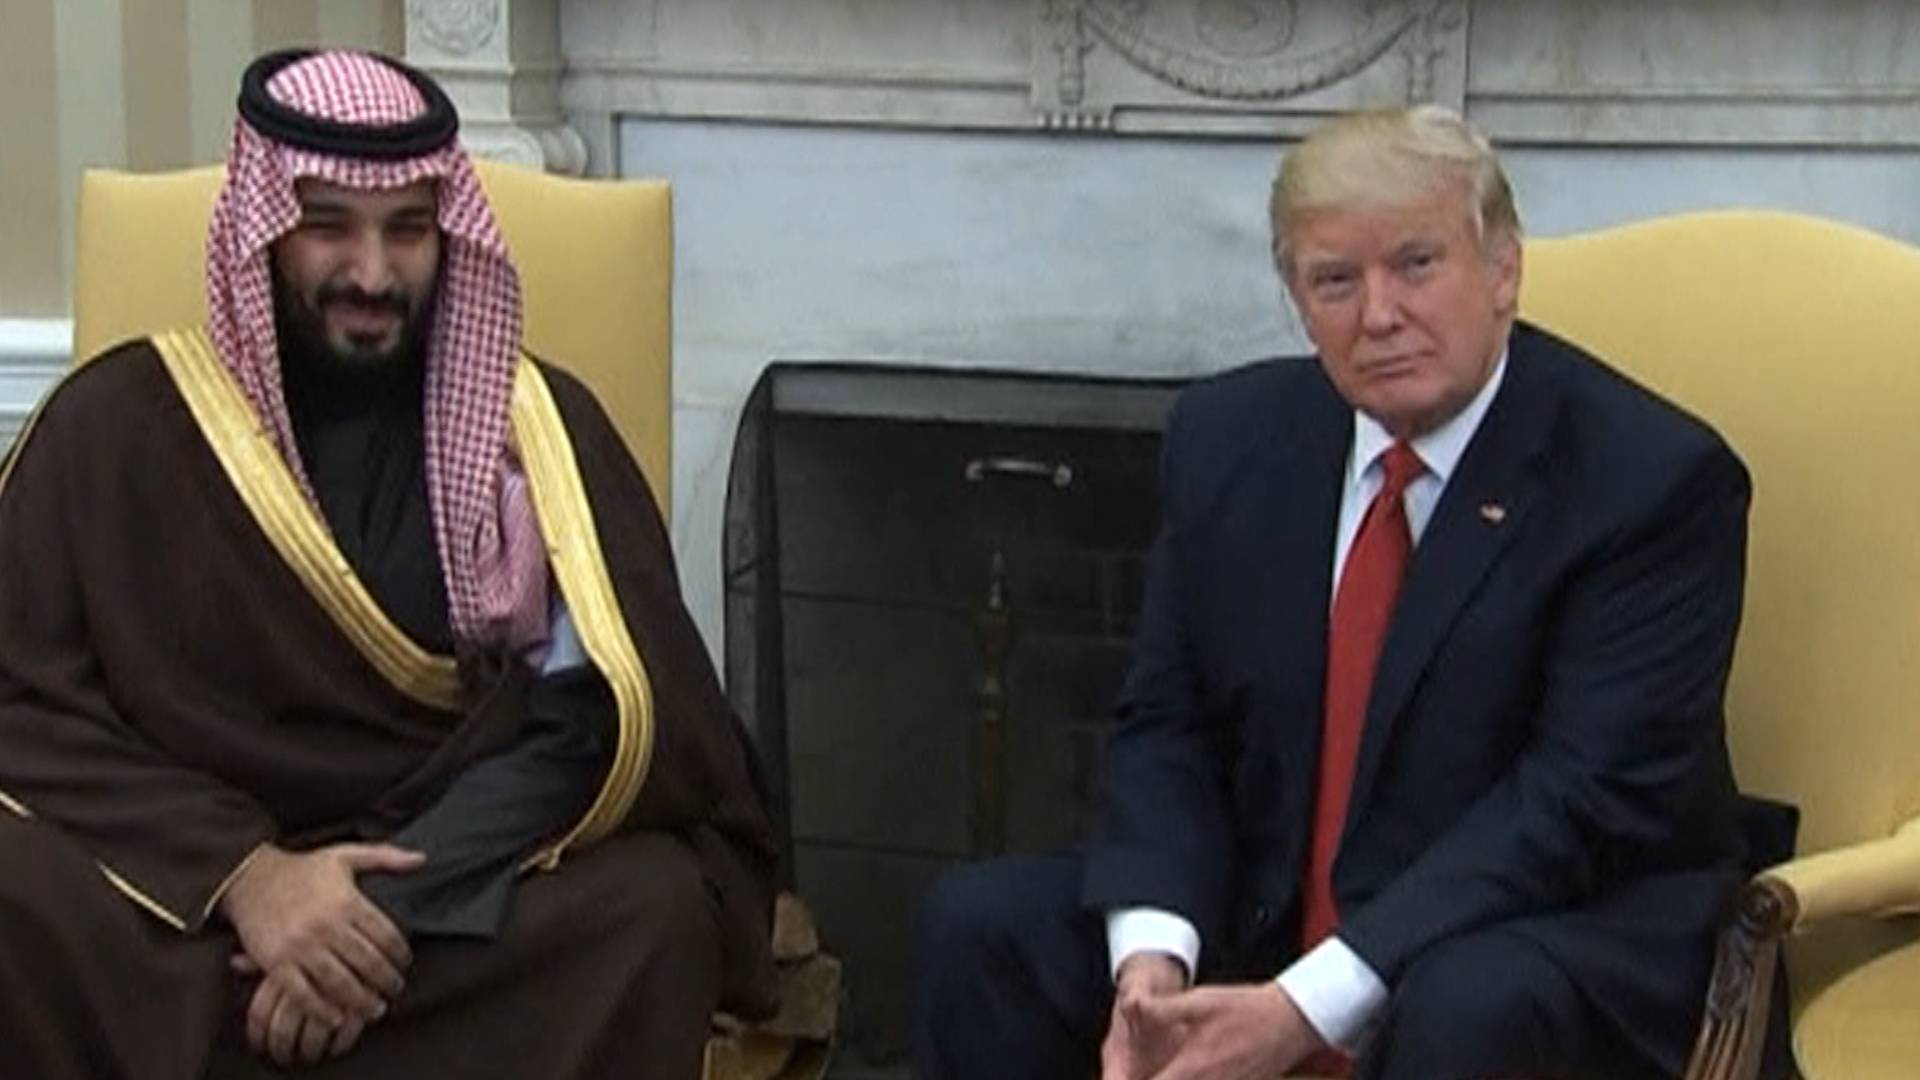 Le DOJ et le Congrès font face à de nouveaux appels pour enquêter sur les liens financiers de Trump avec l'Arabie saoudite